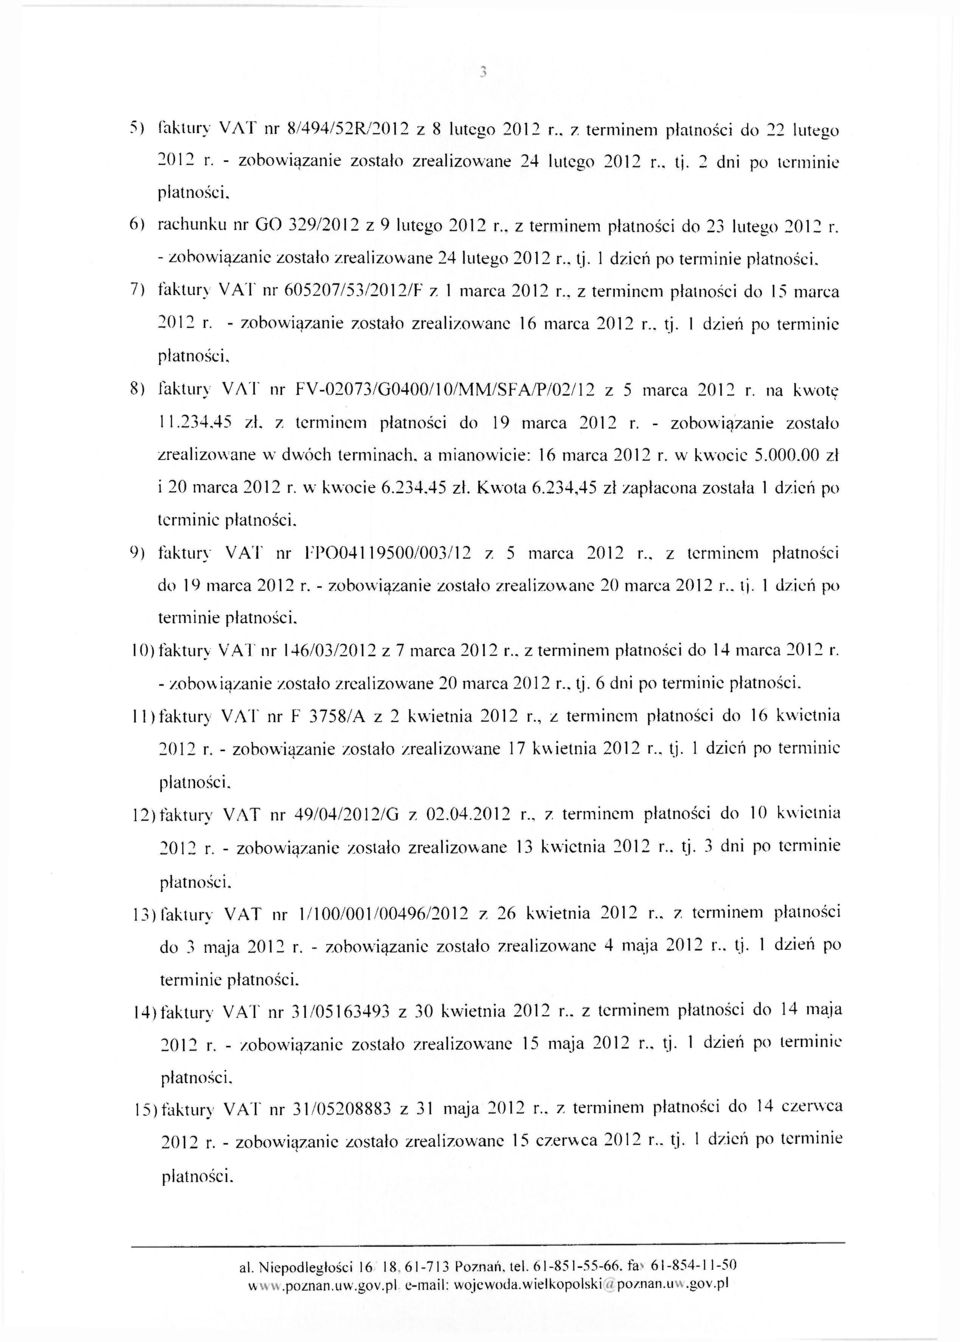 1 dzień po terminie płatności. 7) faktury VAT nr 605207/53/2012/F z 1 marca 2012 r., z terminem płatności do 15 marca 2012 r. - zobowiązanie zostało zrealizowane 16 marca 2012 r., tj.